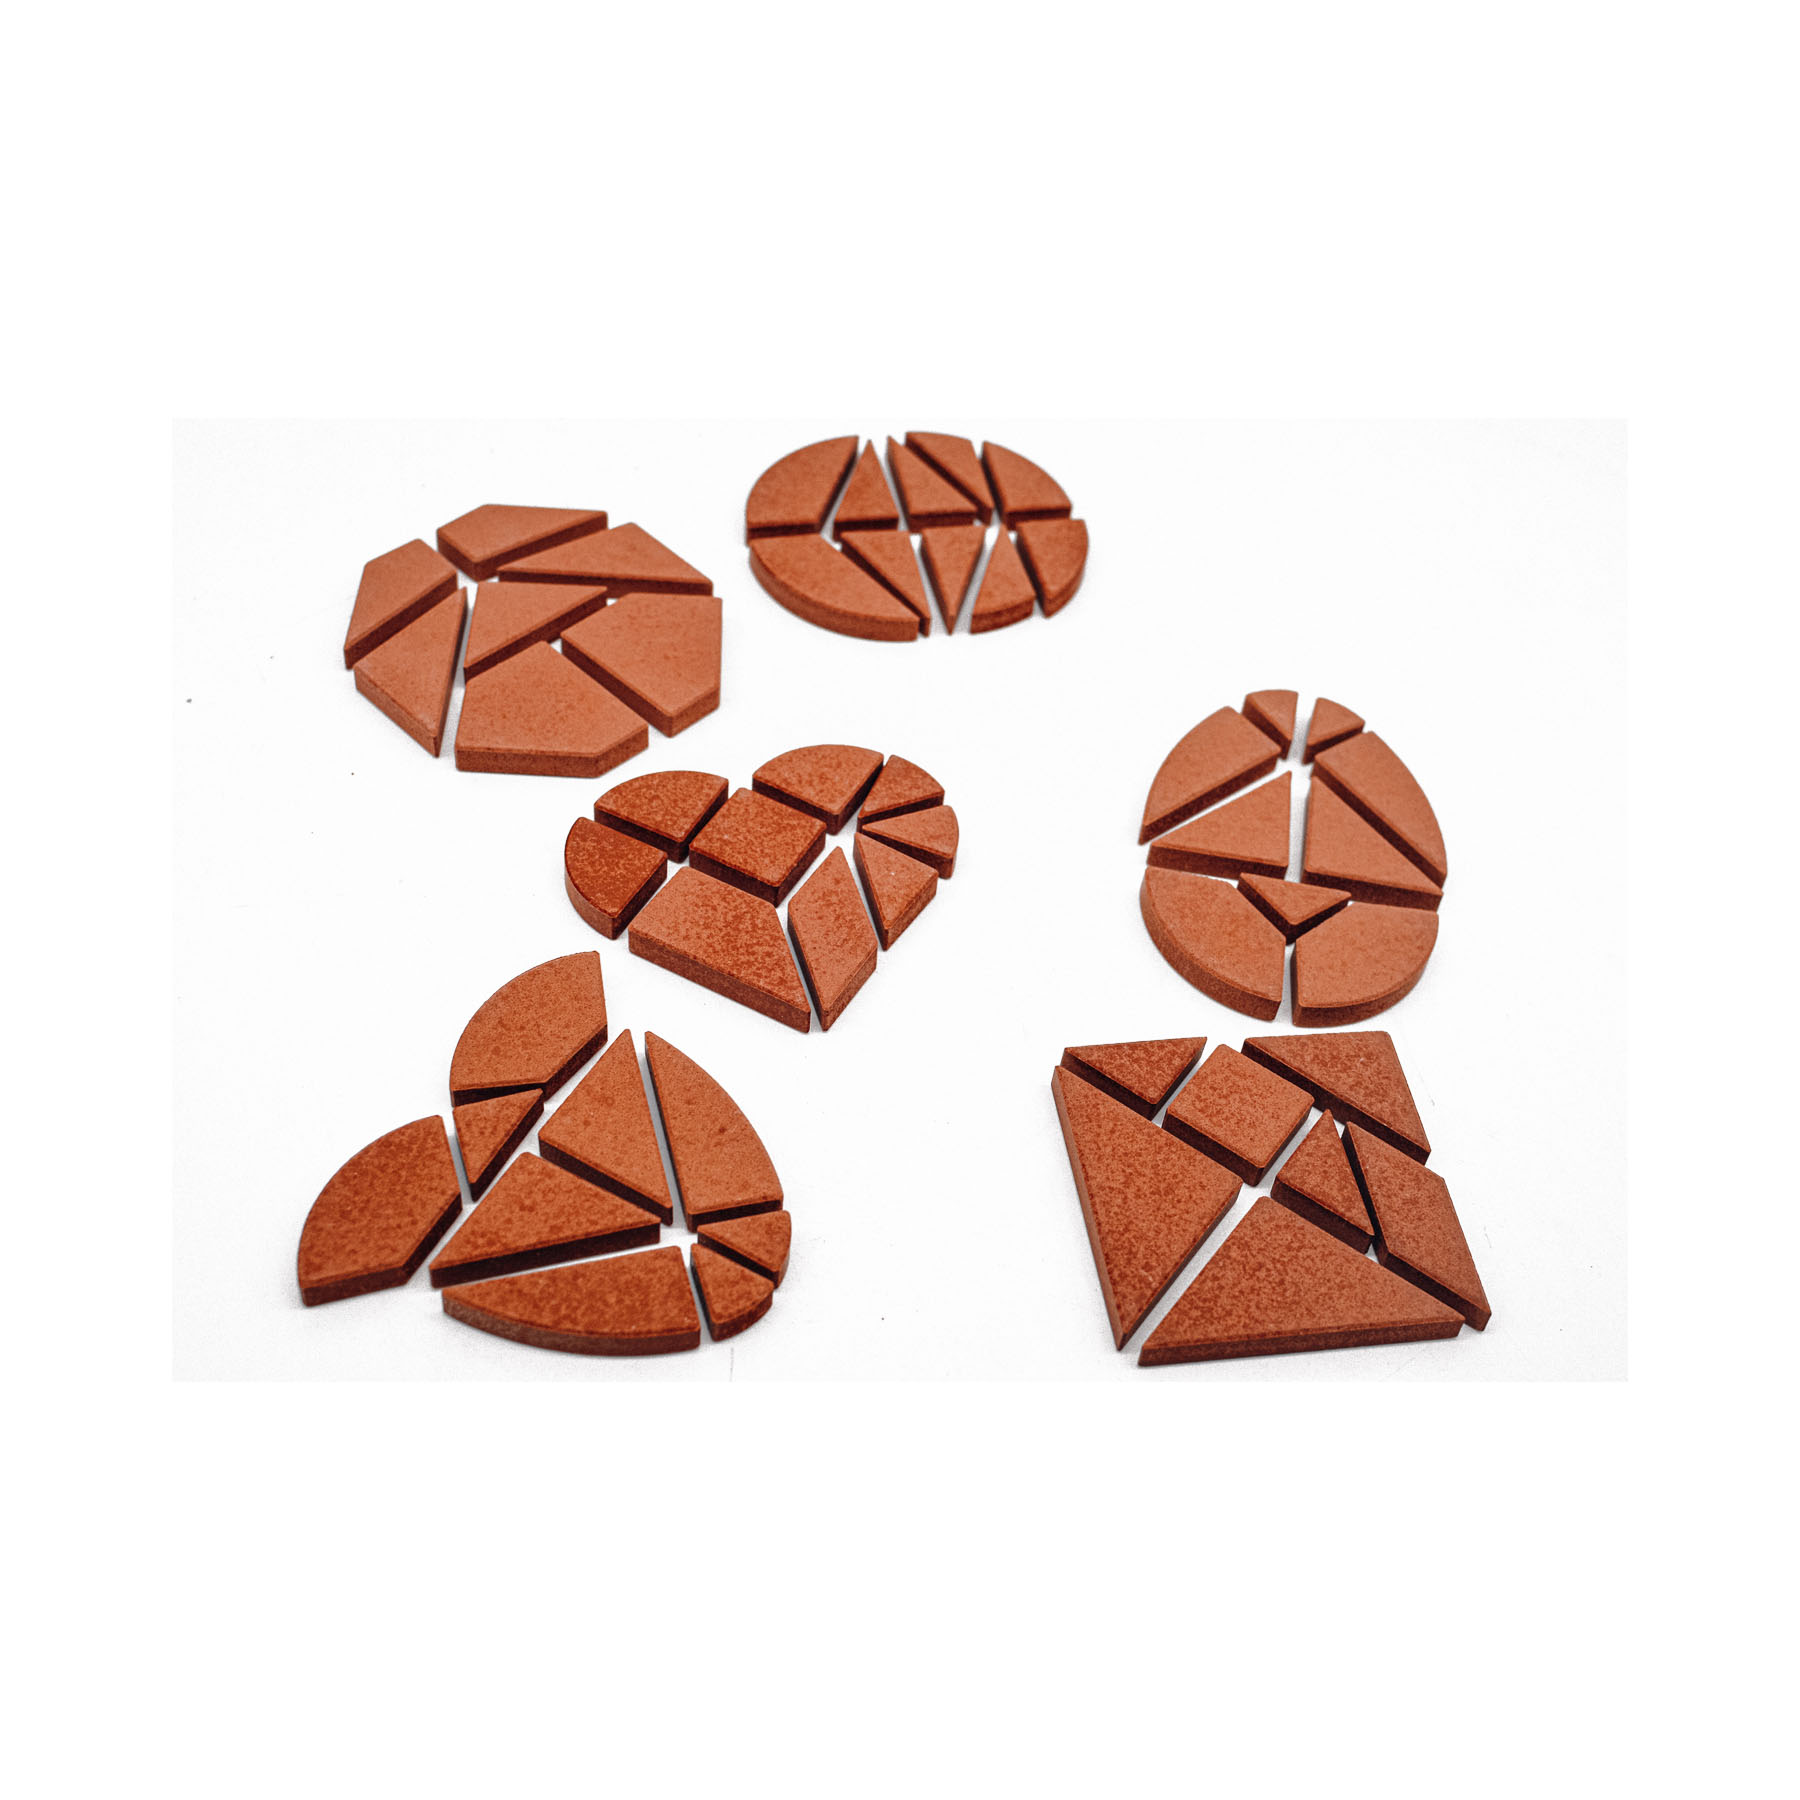 Anker-Rätselspaß: Das Tangram-Set mit 6 klassischen Puzzlen